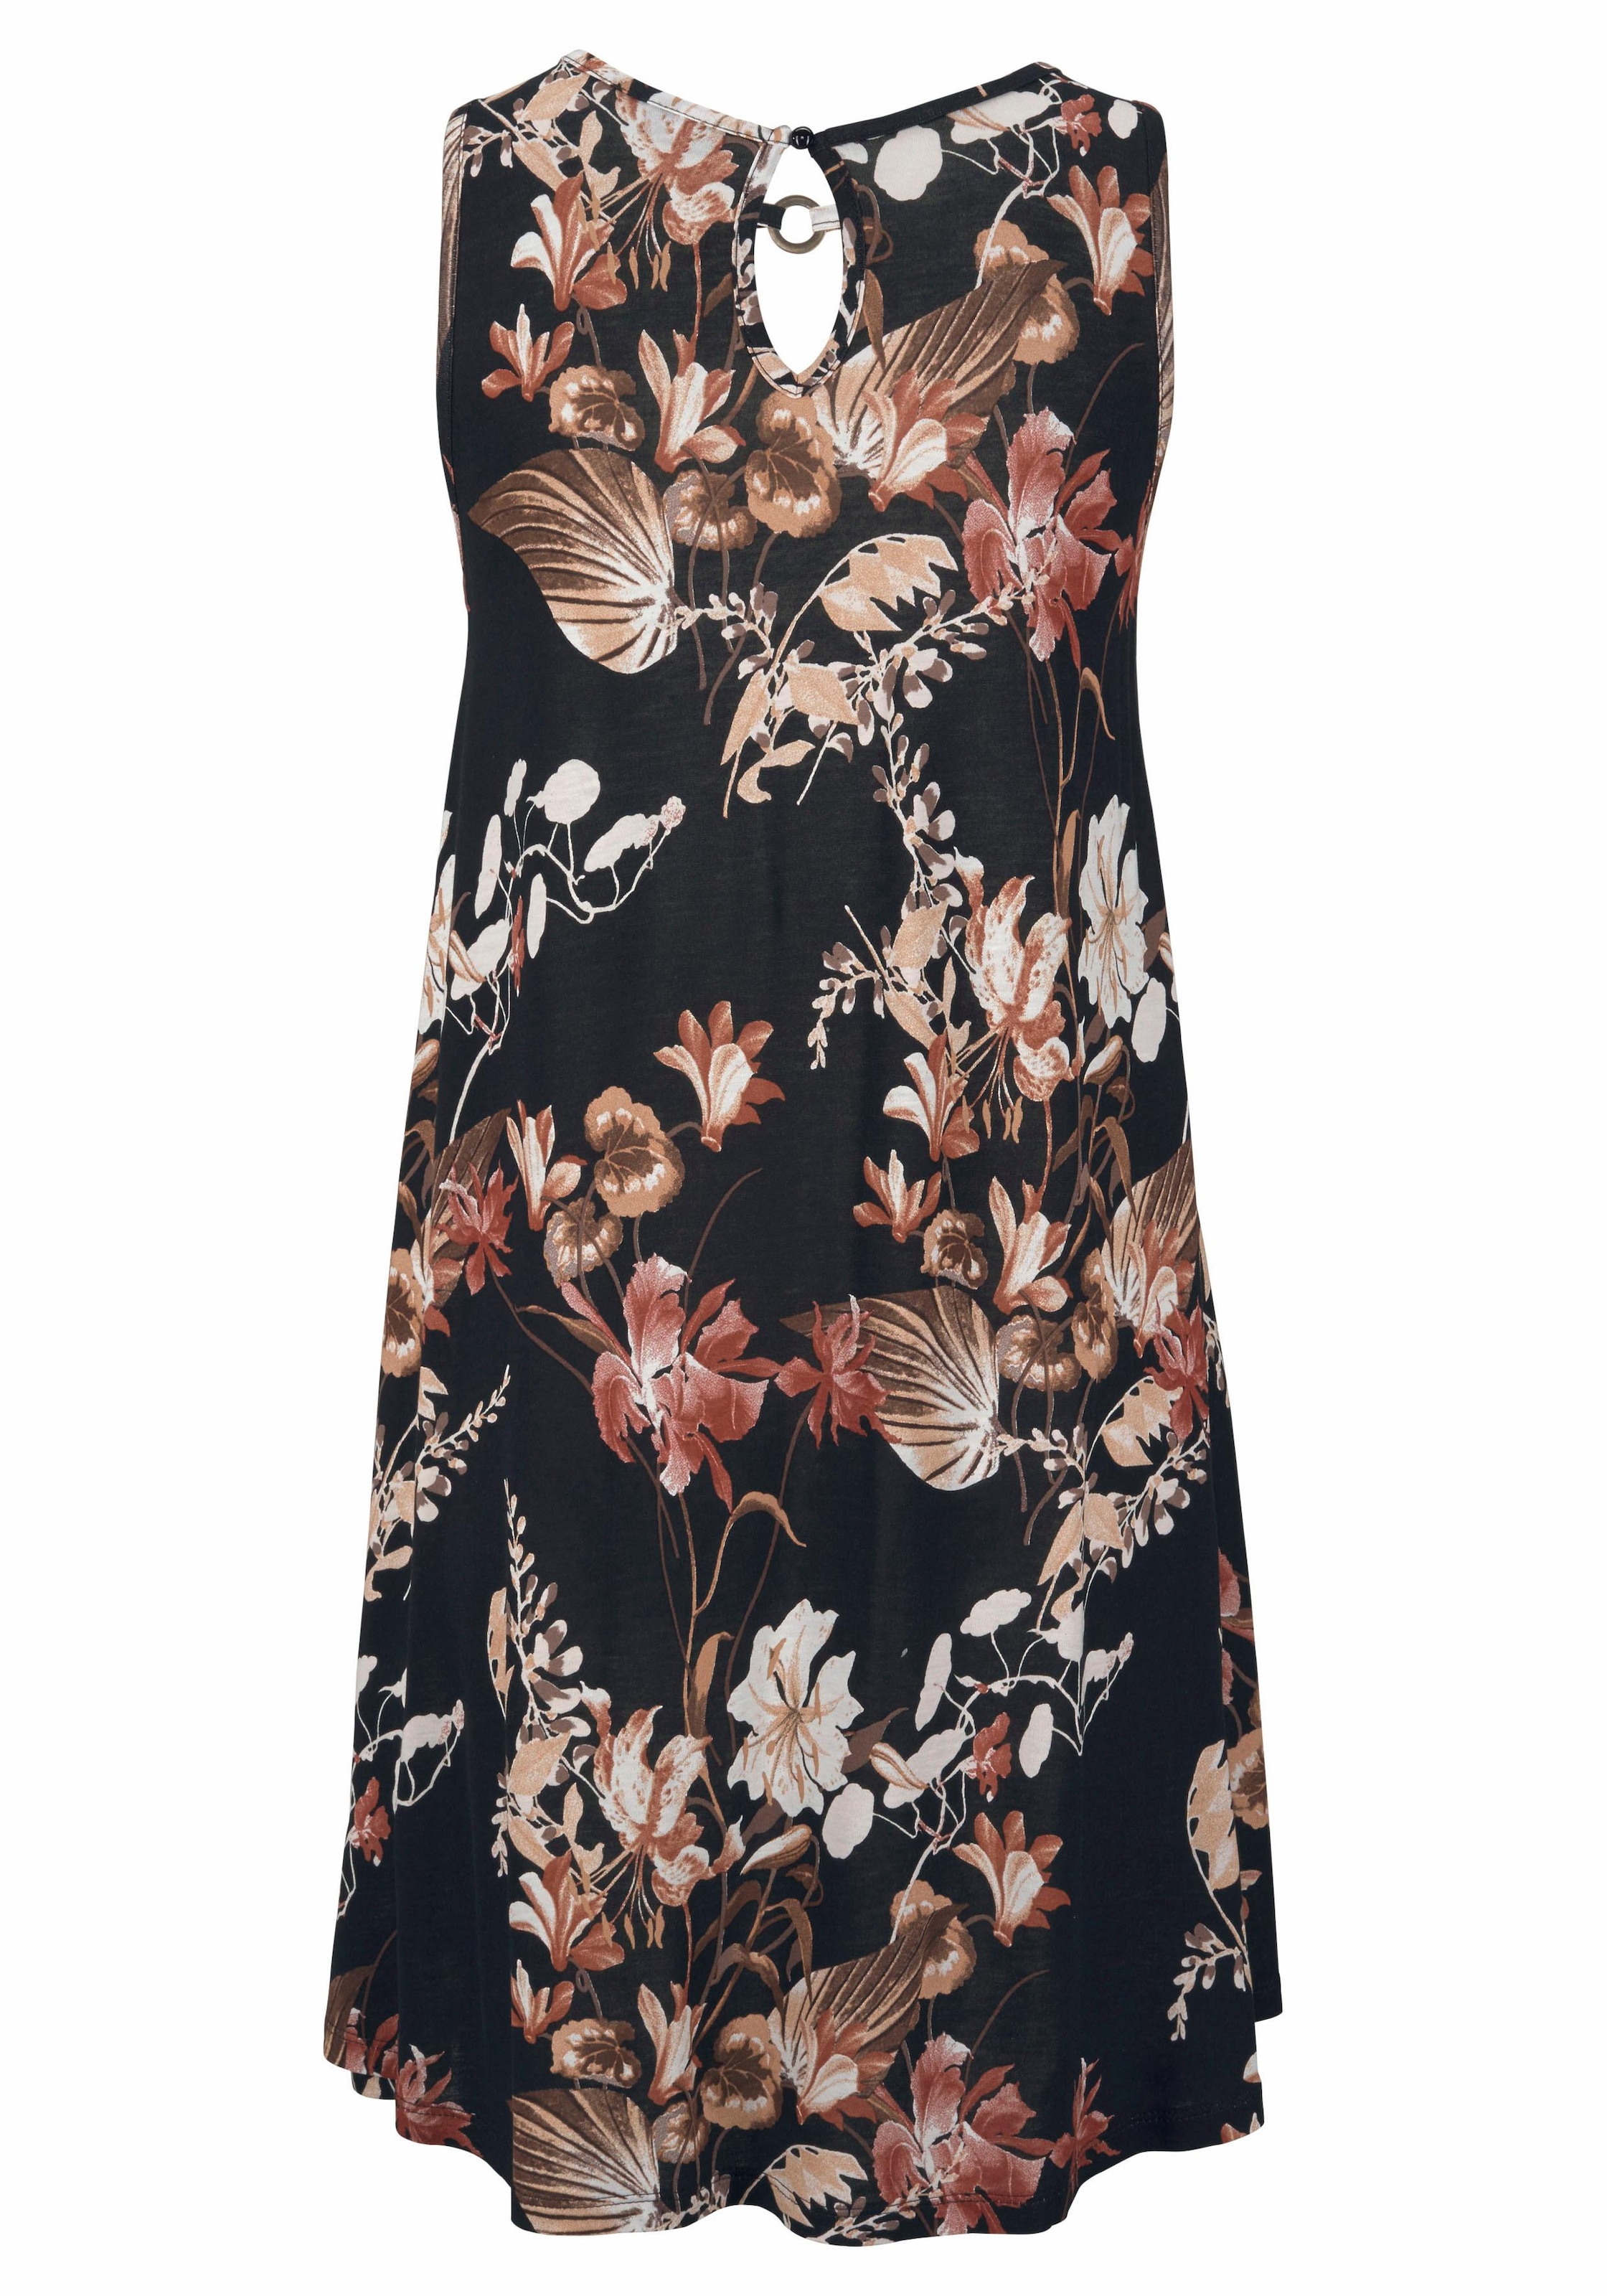 LASCANA Strandkleid, mit Ringdetail am Ausschnitt, Sommerkleid mit Blumendruck